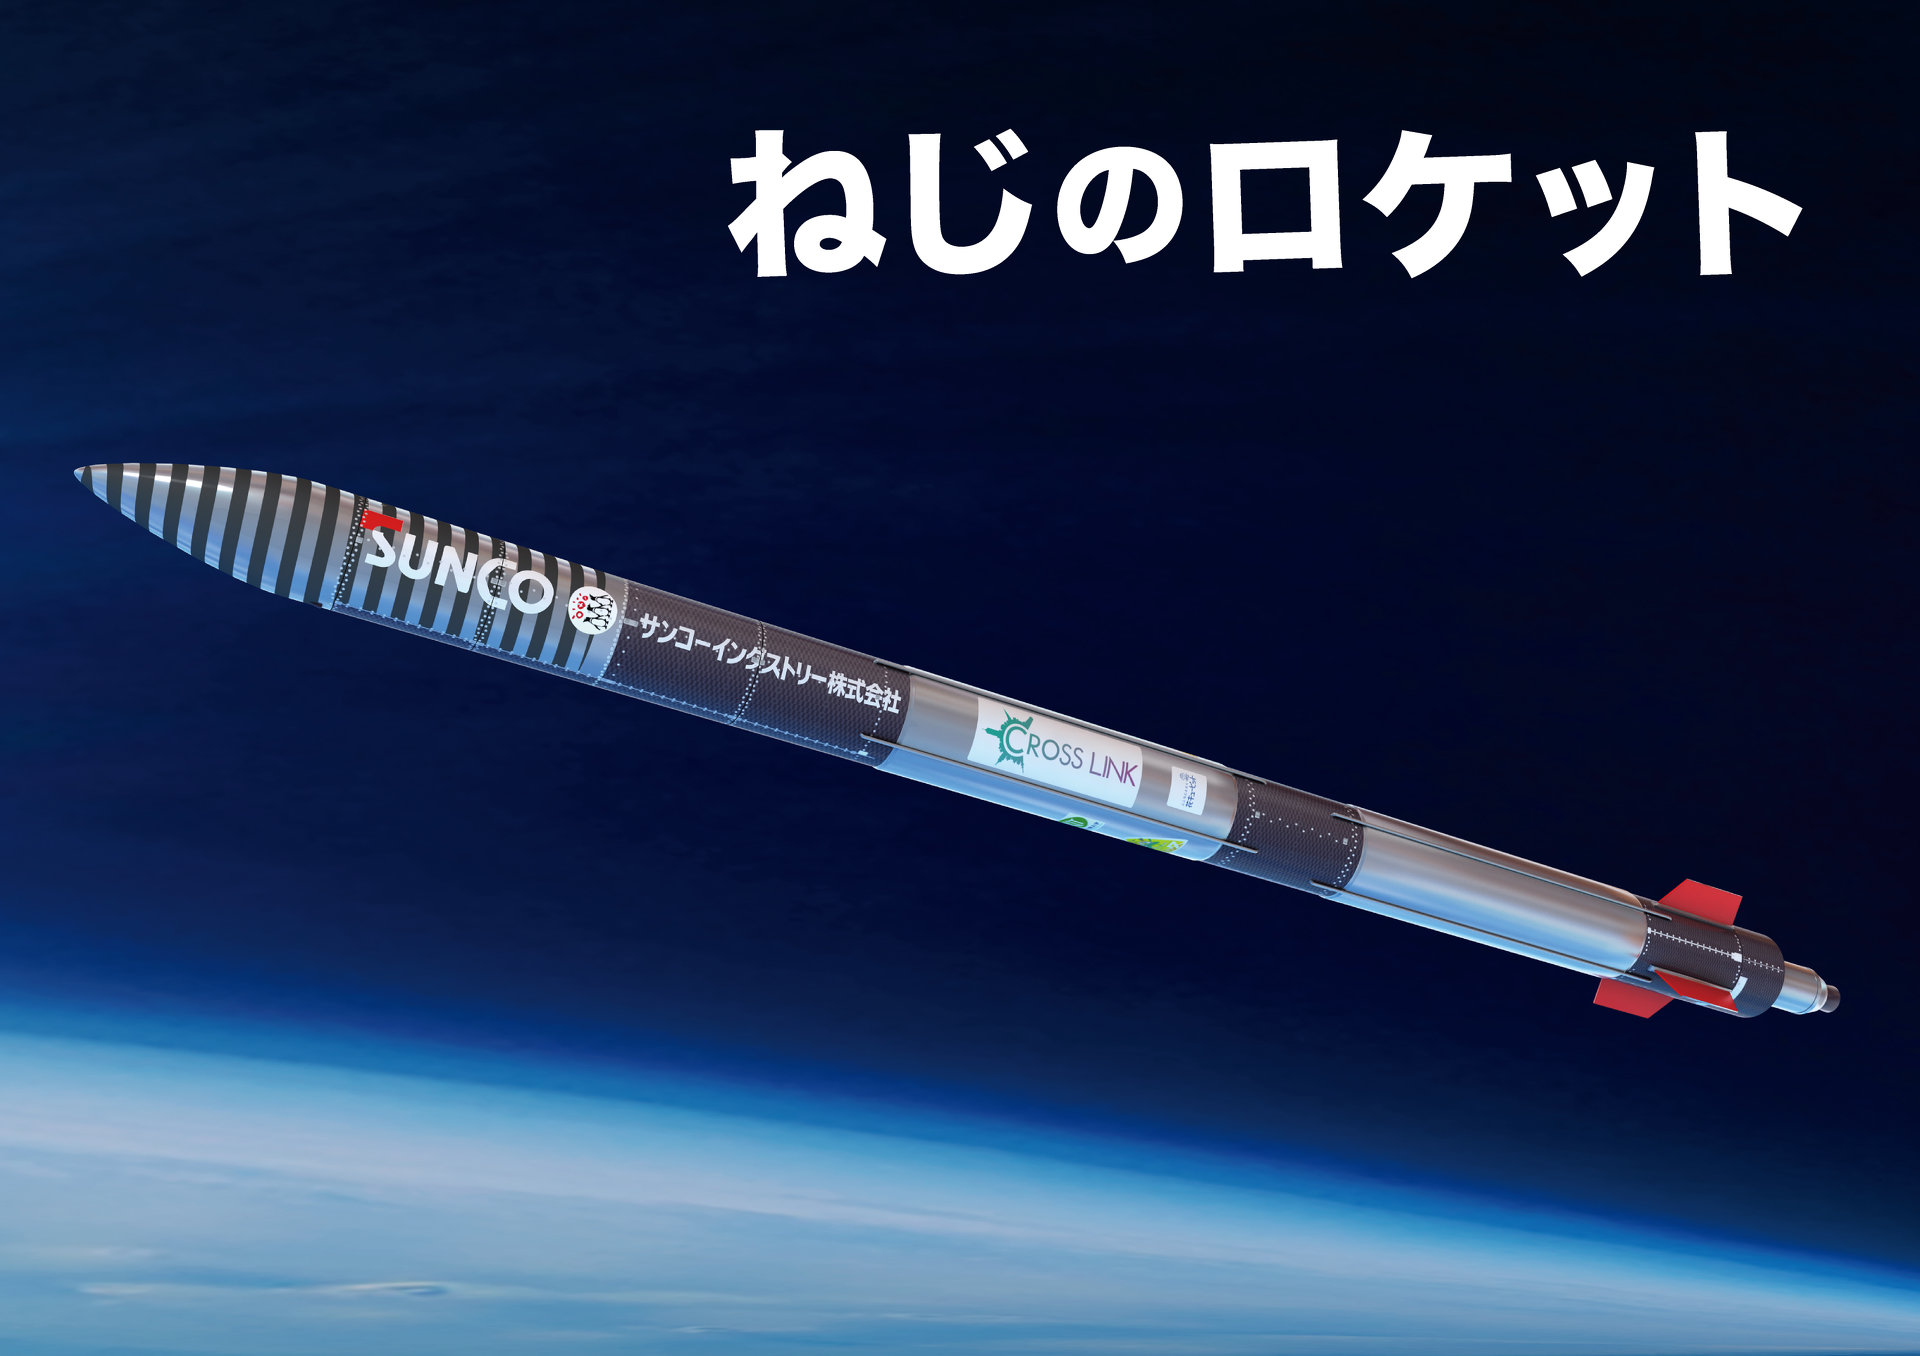 インターステラ 観測ロケット ねじのロケット を7月18日に打ち上げ Itmedia ビジネスオンライン